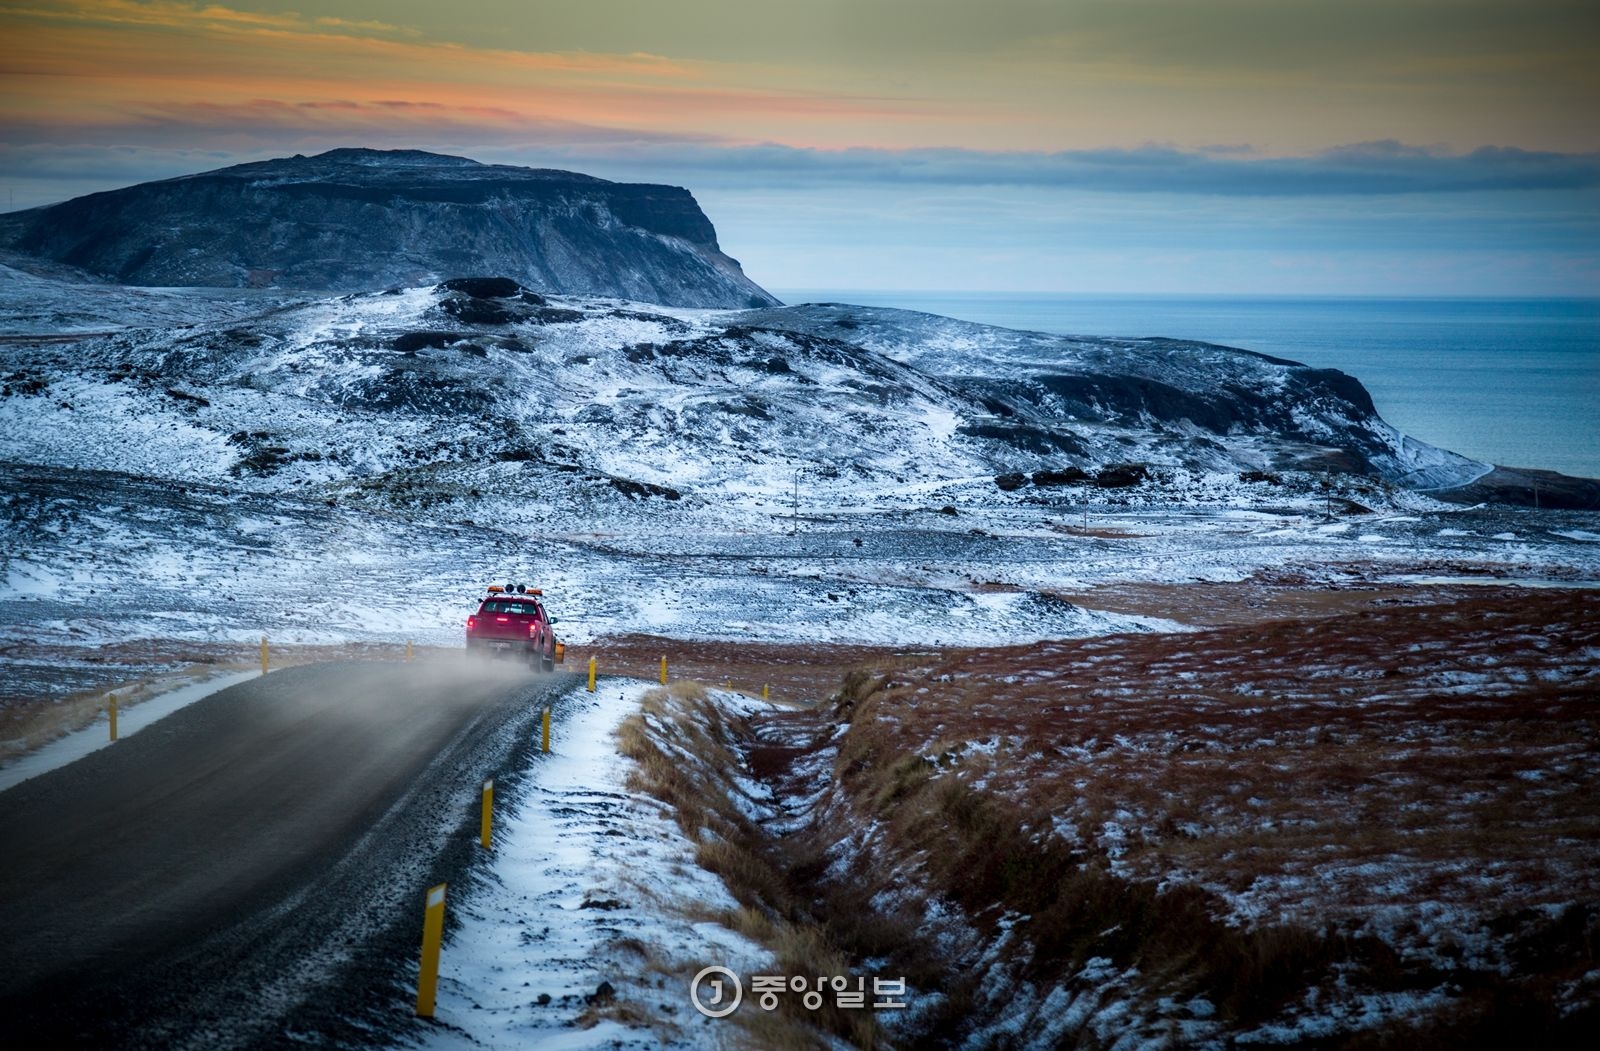 스나이펠스네스 반도로 가는 길. 아이슬란드 서쪽에 위치한 이 반도는 ‘아이슬란드의 축소판’으로 불릴 정도로 아이슬란드의 다채로운 자연을 고루 갖췄다.